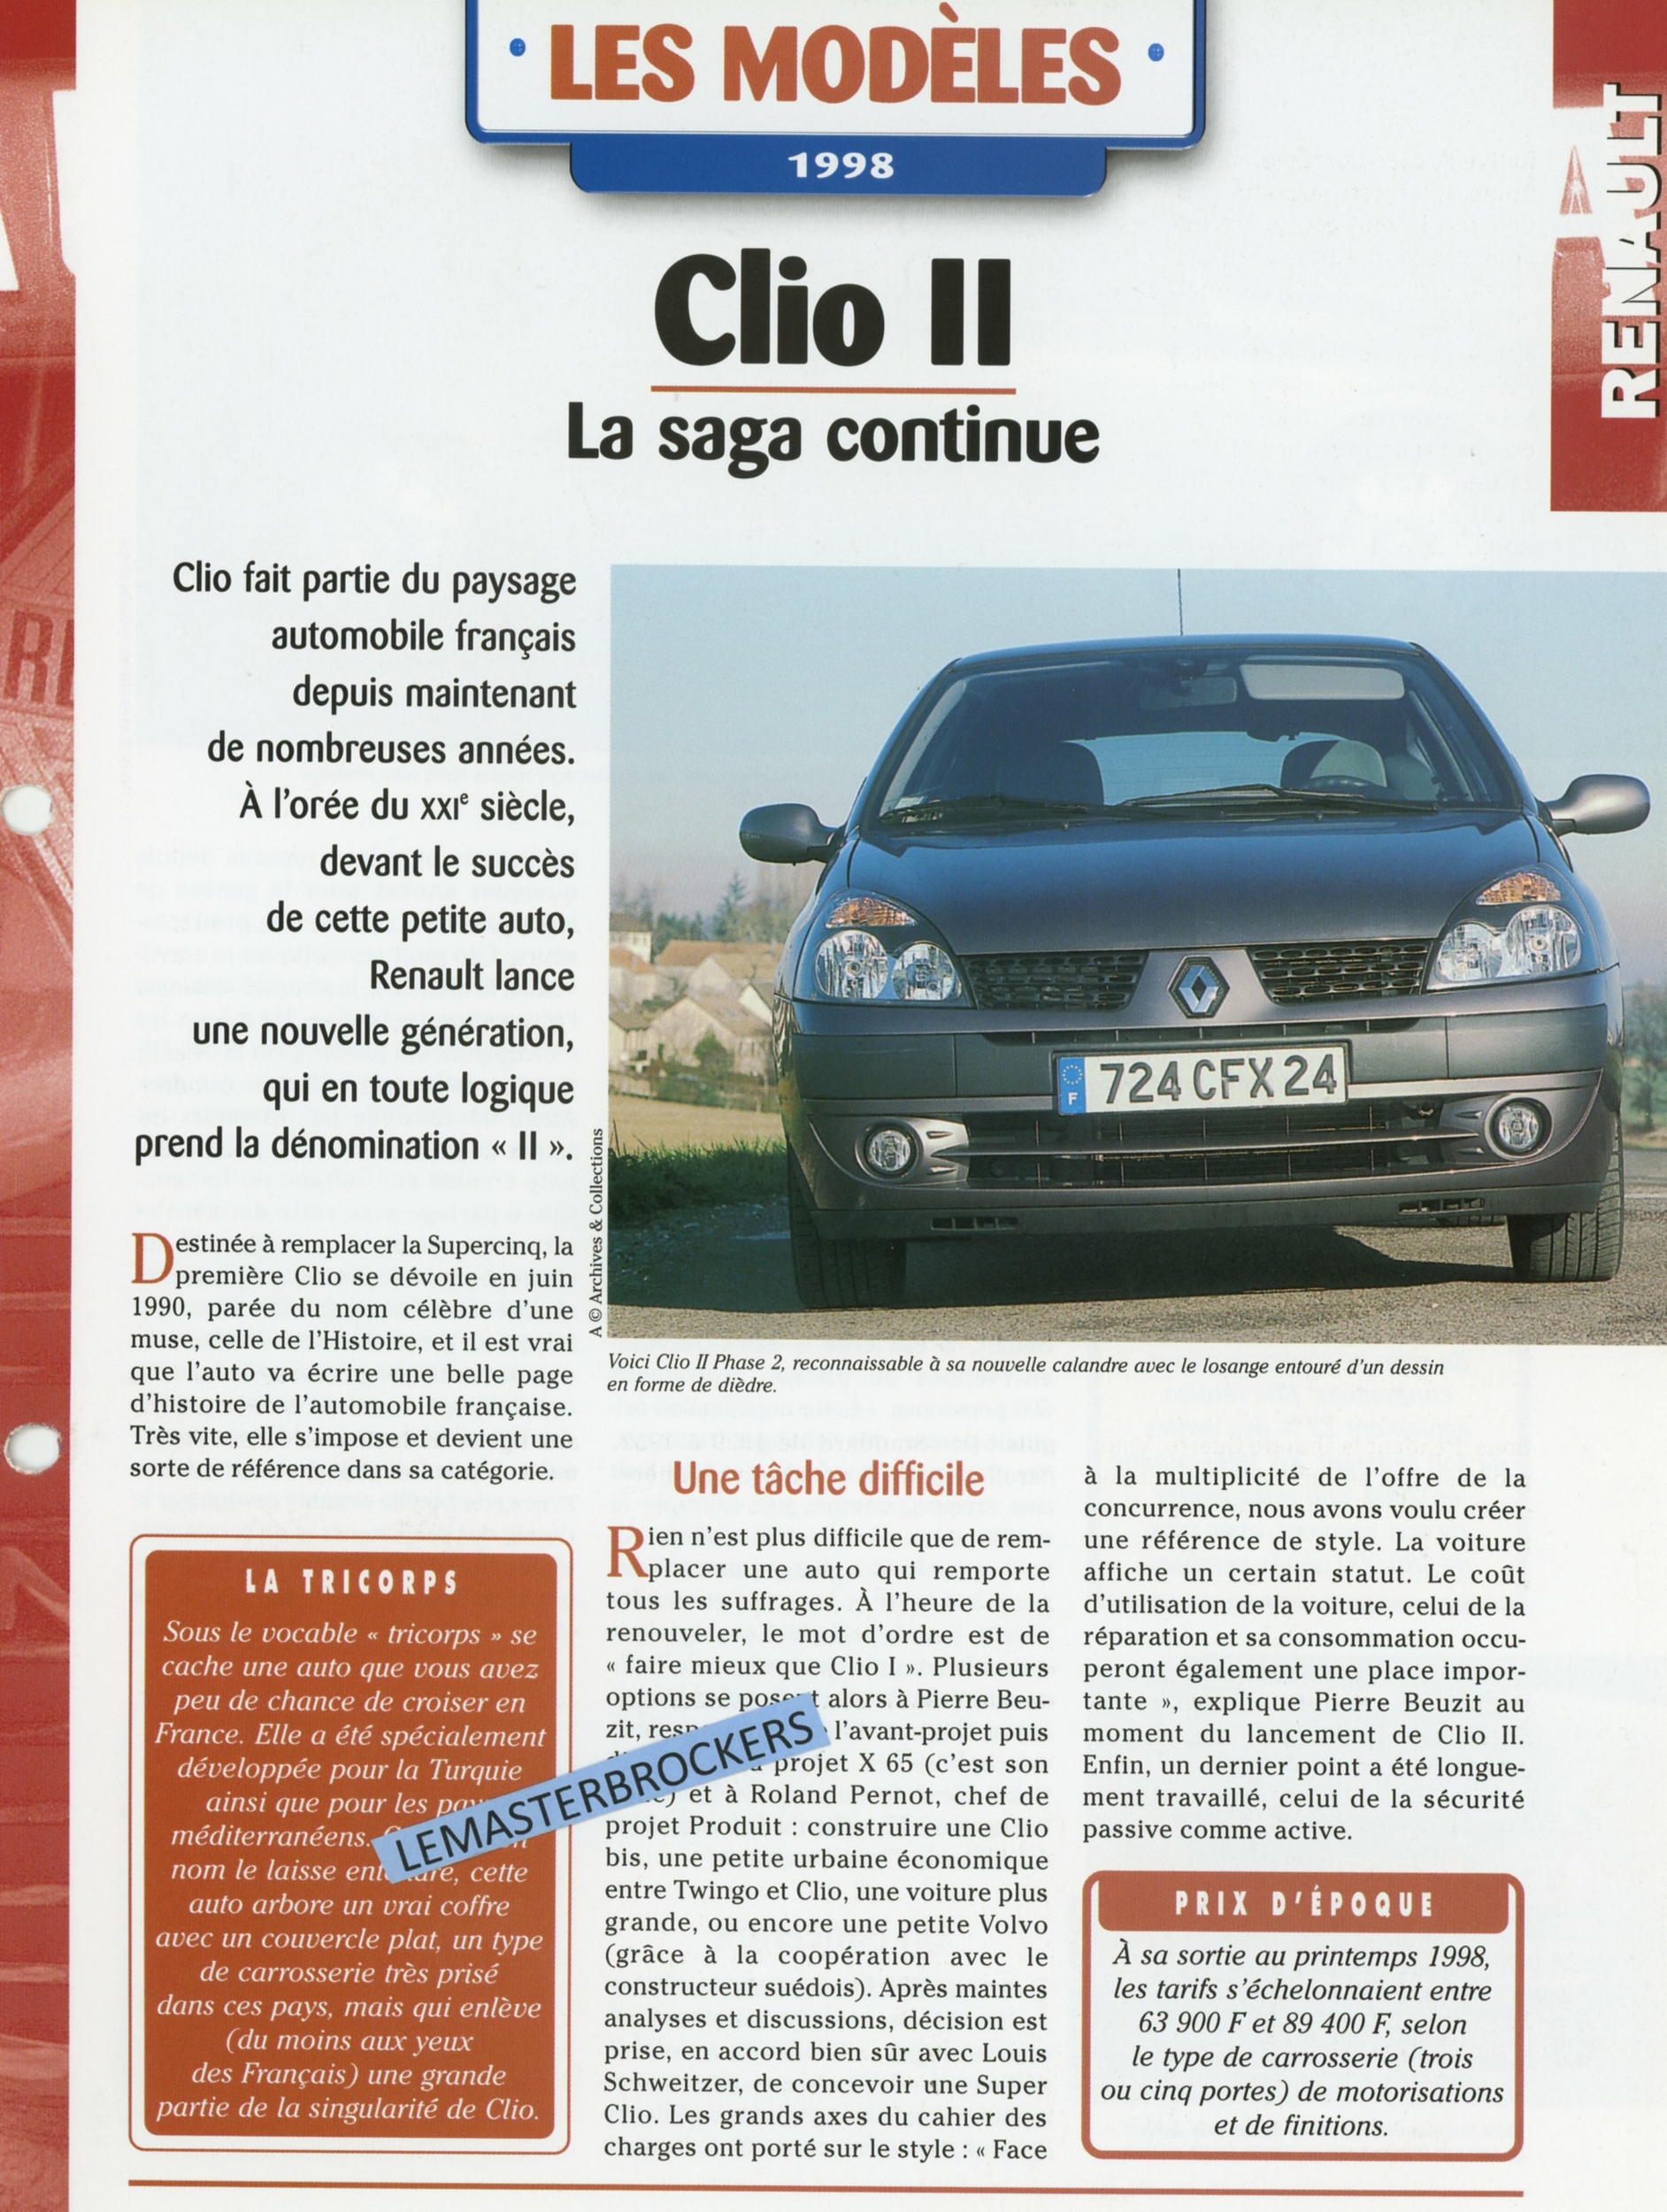 RENAULT CLIO 2 LA SAGA CONTINUE - FICHE AUTO HACHETTE LES MODÈLES 1998